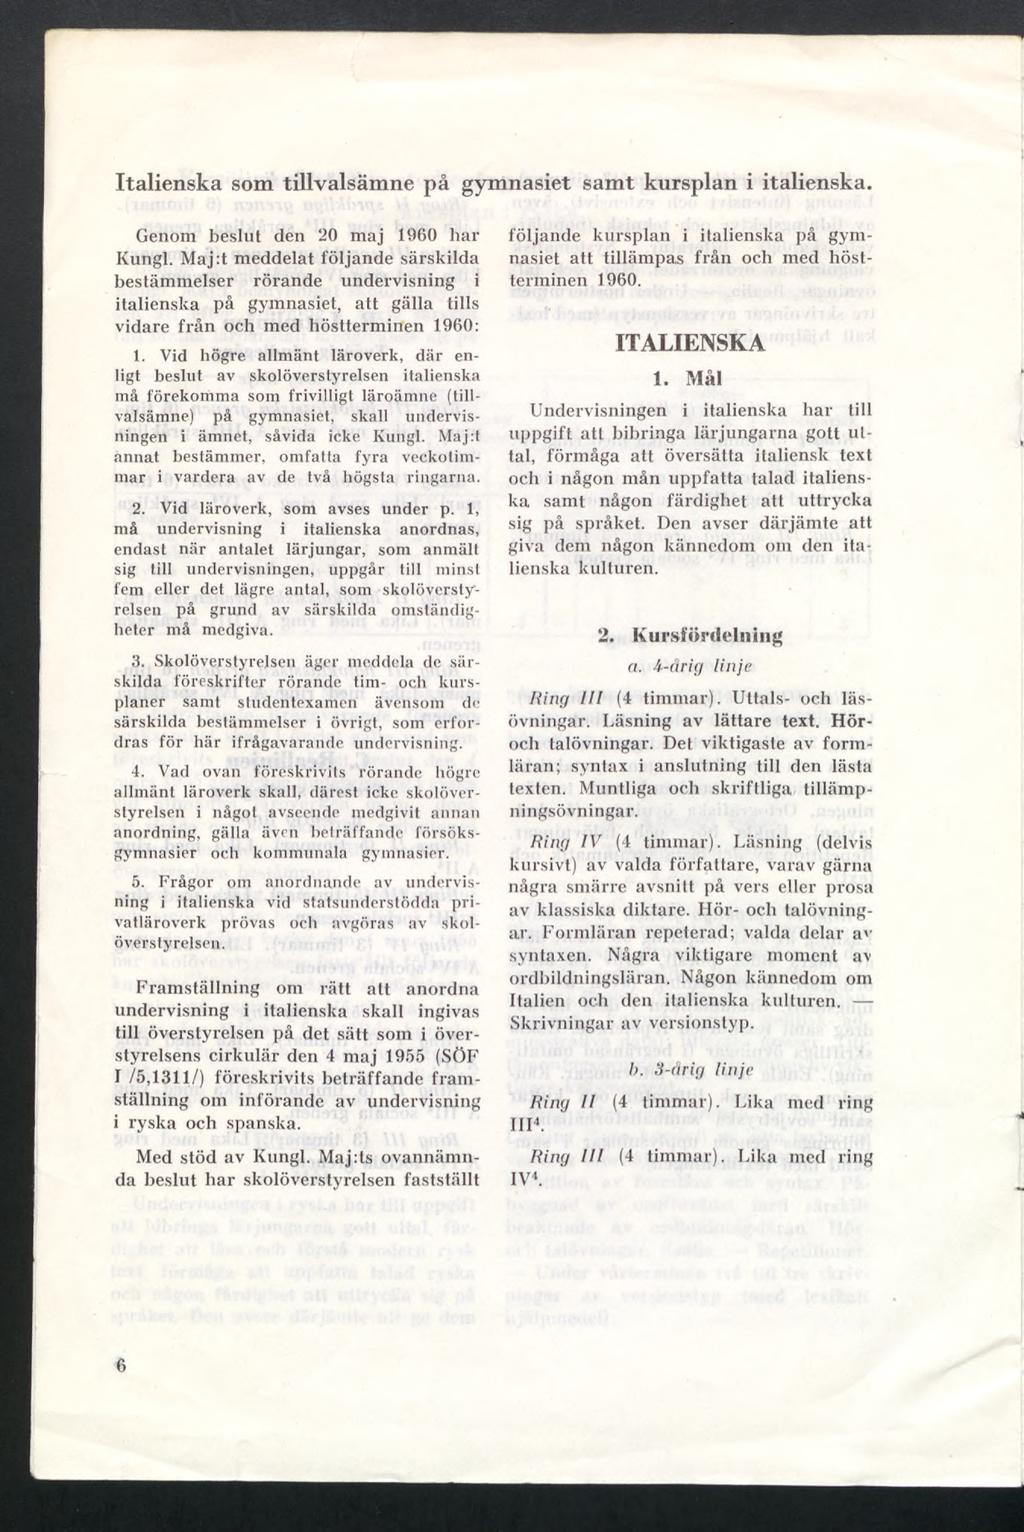 Italienska som tillvalsämne på gymnasiet samt kursplan i italienska. Genom beslut den 20 maj 1960 har Kungl.